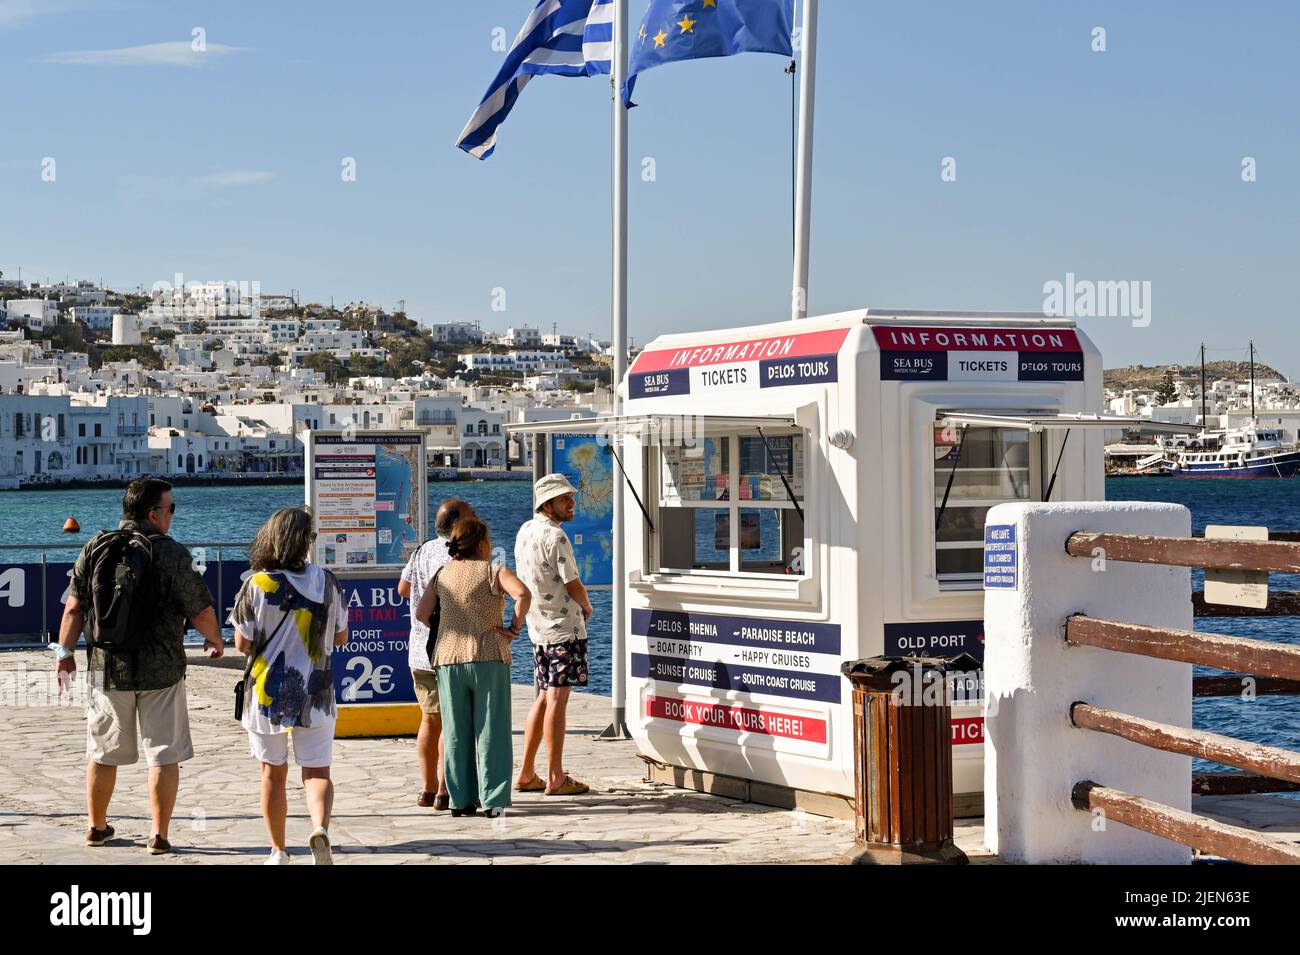 Port ferry mykonos greece immagini e fotografie stock ad alta risoluzione -  Alamy